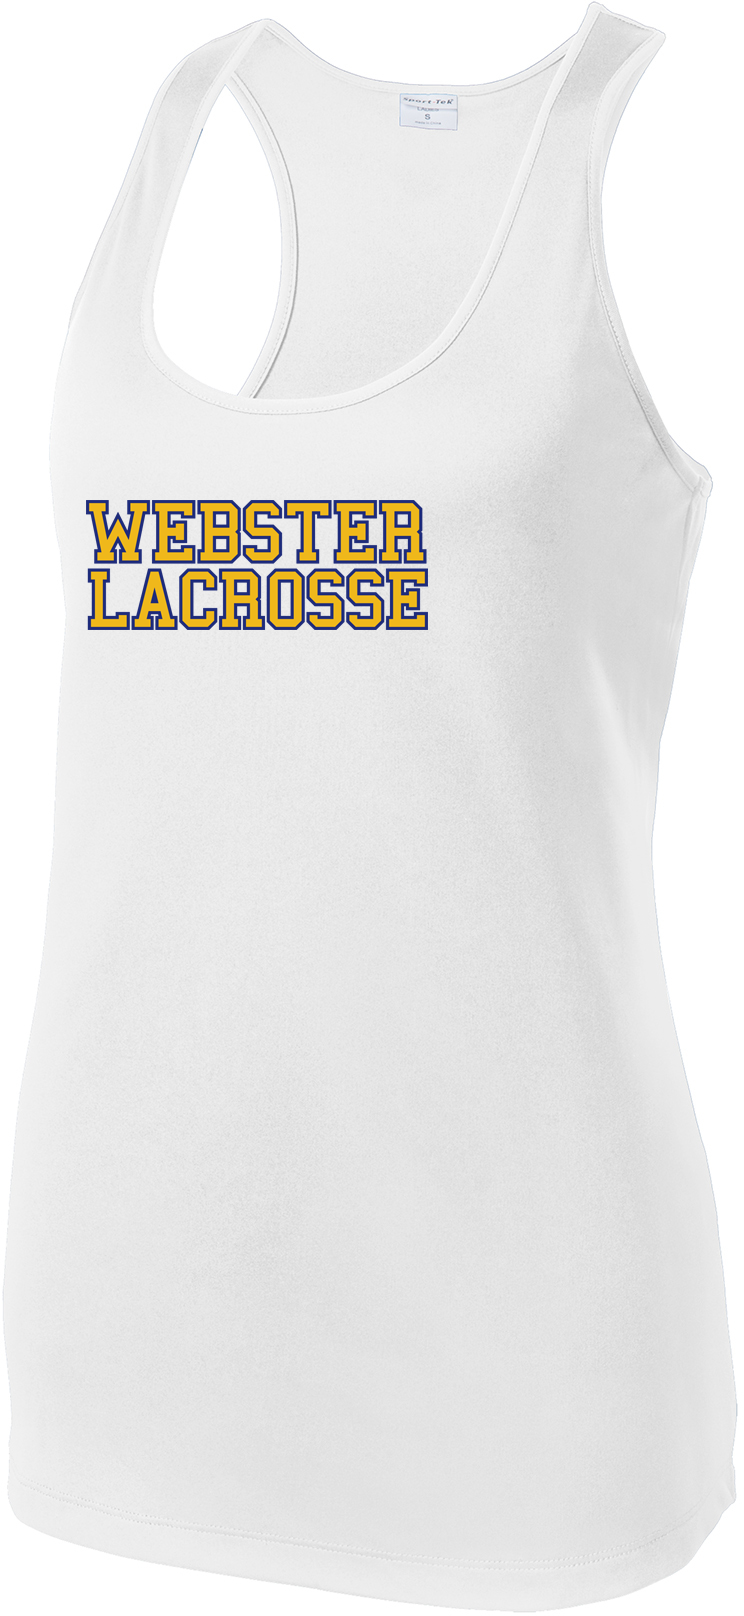 Webster Lacrosse Women's White Racerback Tank